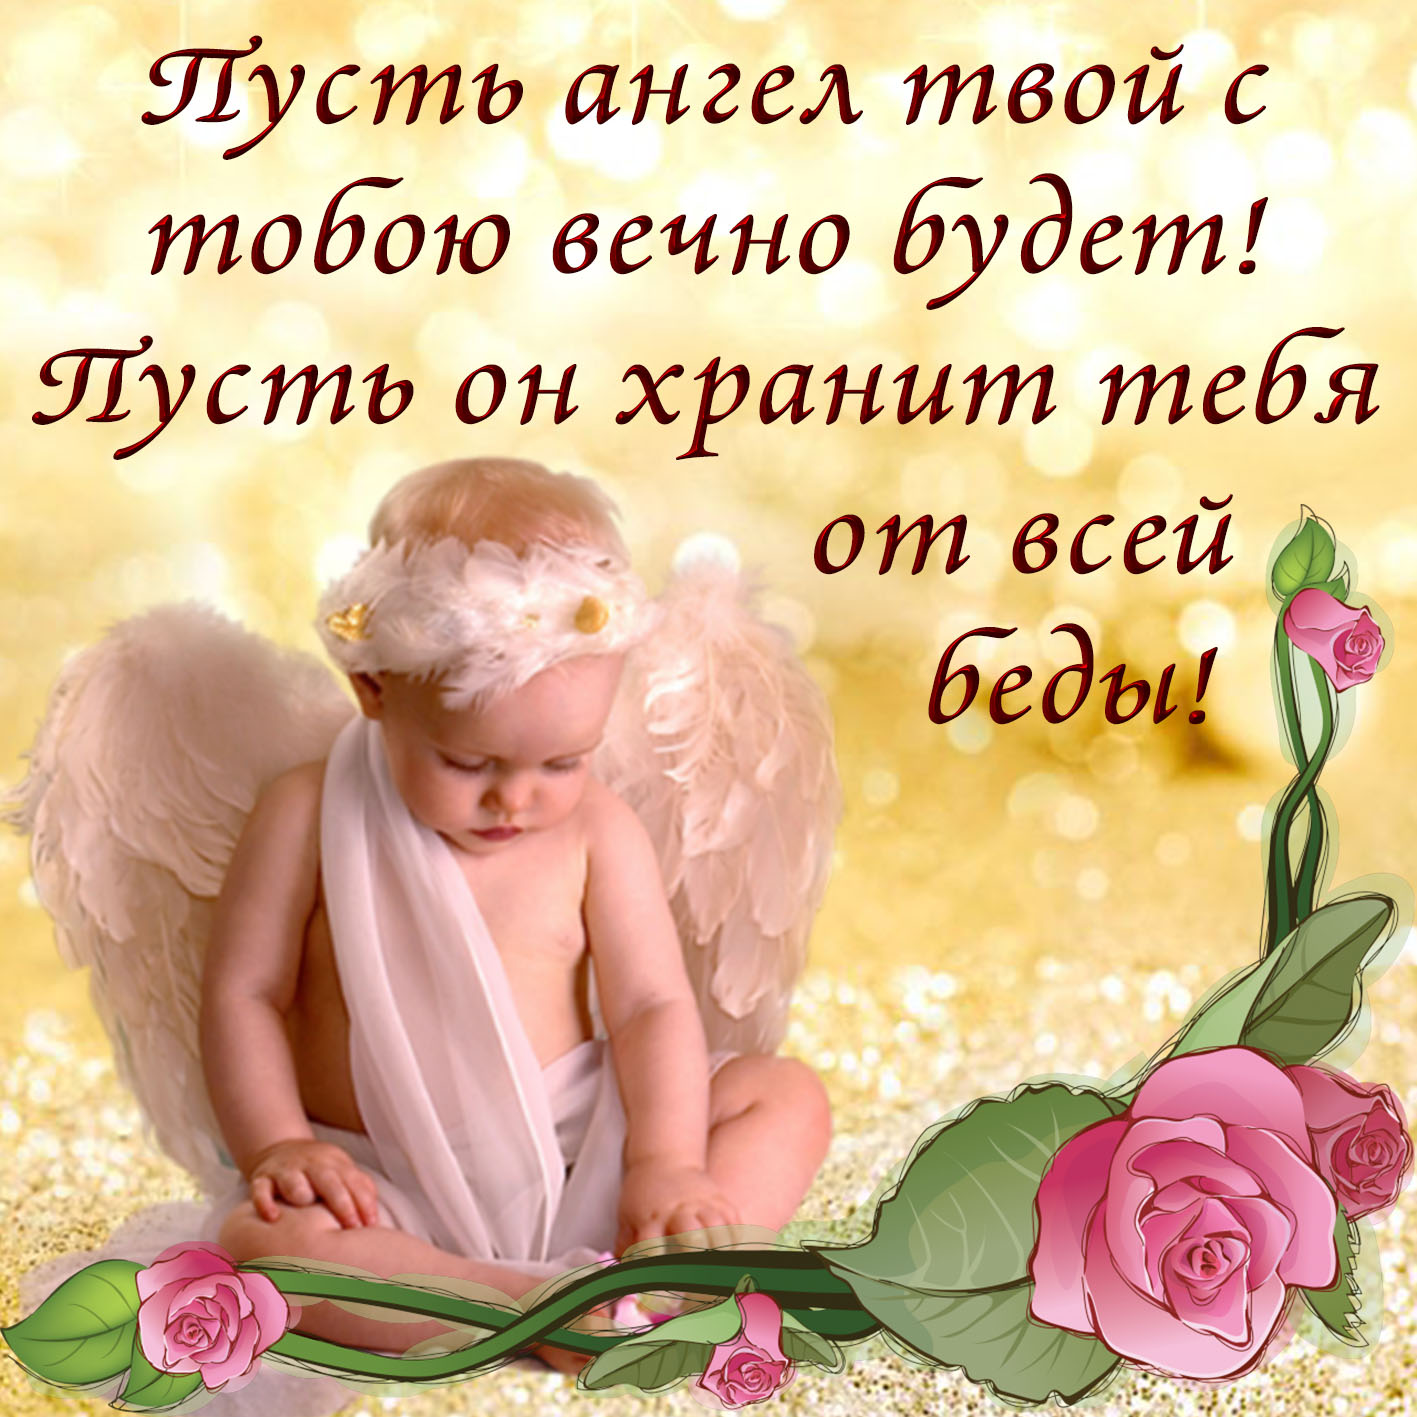 Православная открытка пожелания ангела-хранителя